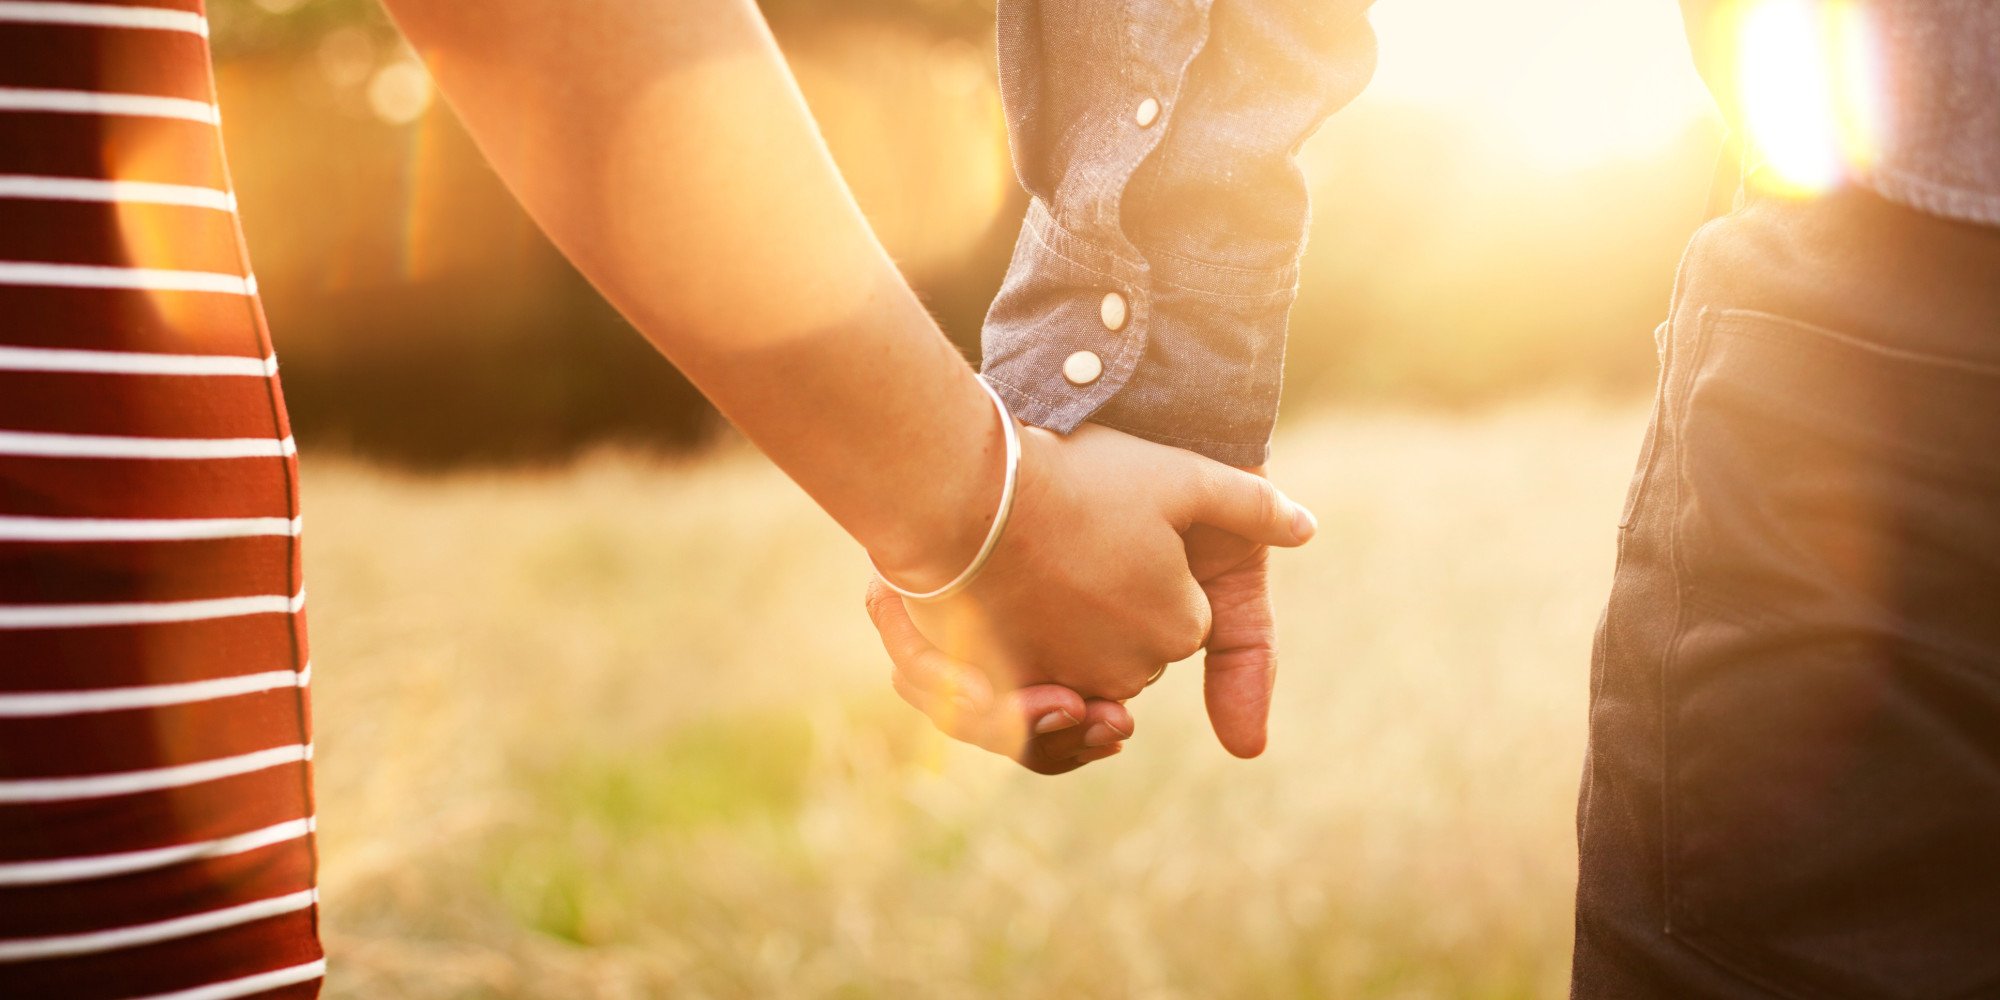 Νιώθεις ότι η σχέση σου διαλύεται; 6 συμβουλές για να την σώσεις